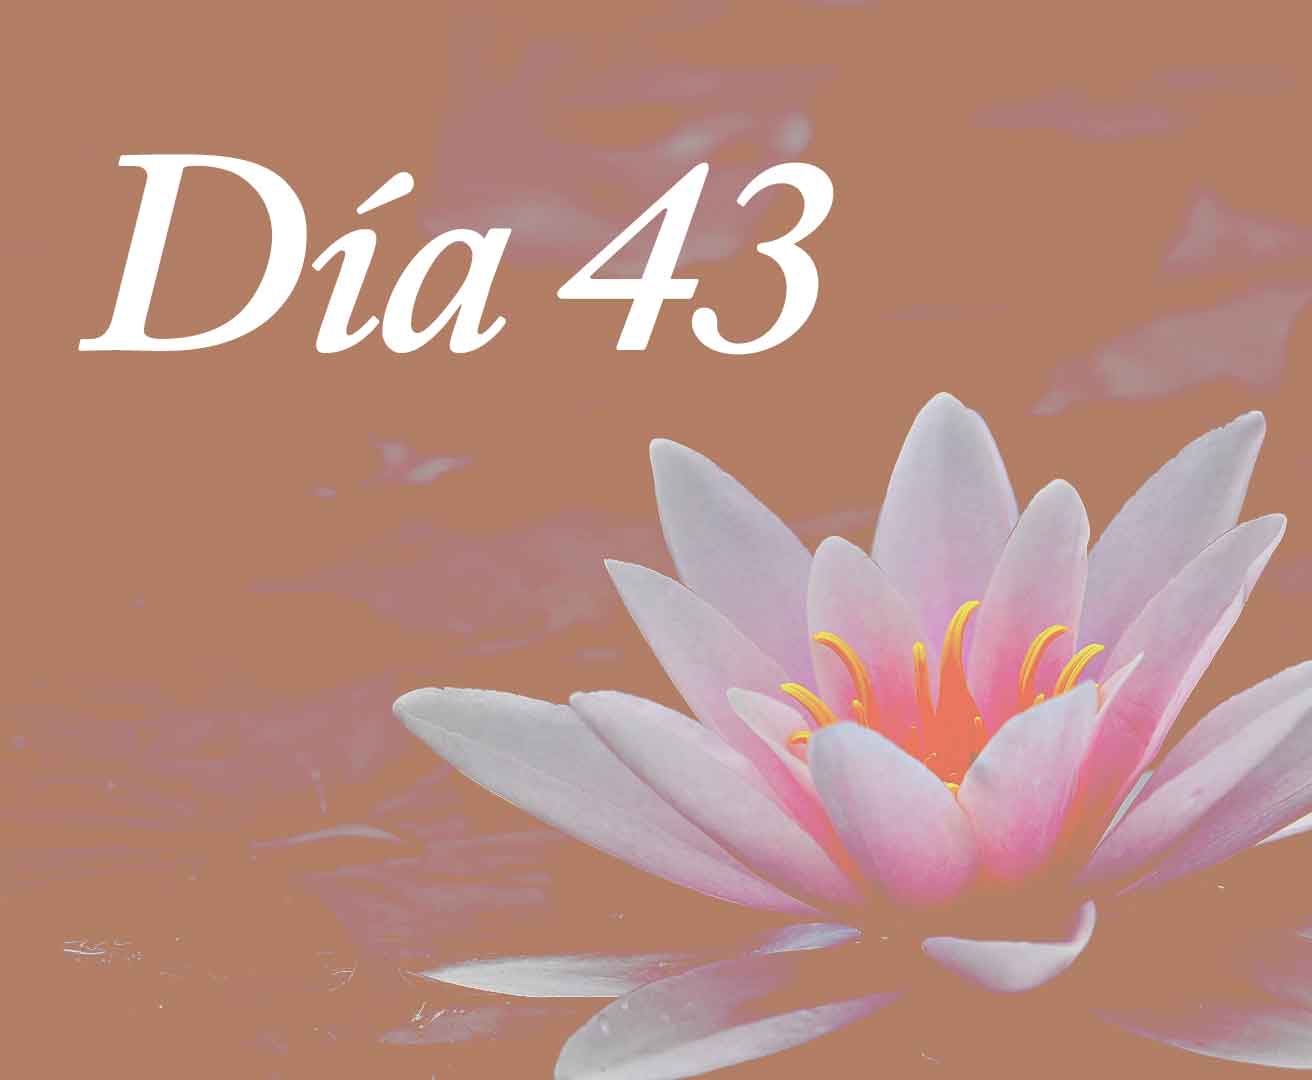 Día 43: La sabiduria de la inseguridad